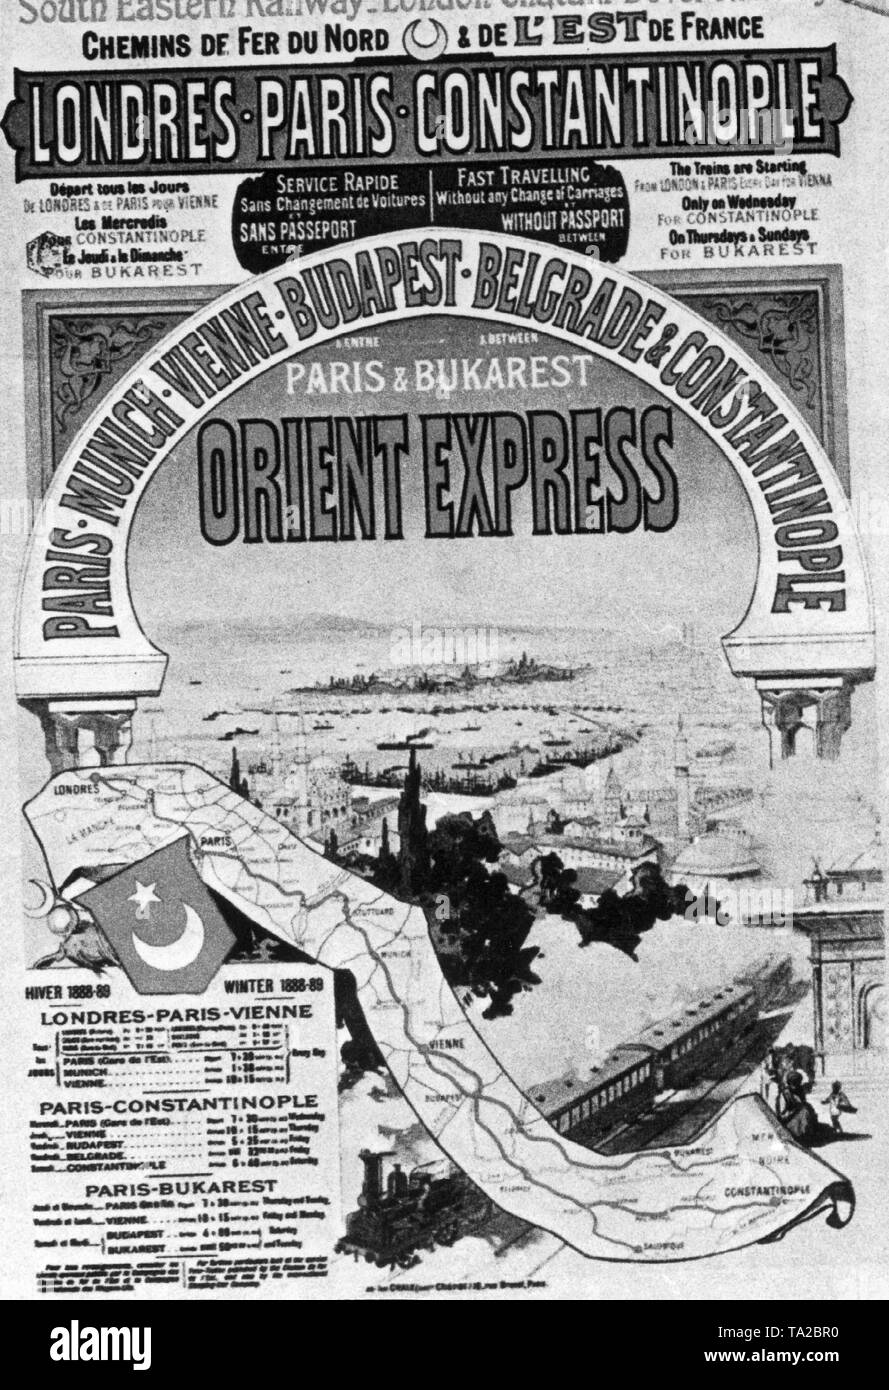 Ein französisches Werbeplakat für den legendären Orient Express, der zwischen Paris und Konstantinopel, von 1888 an lief. Stockfoto